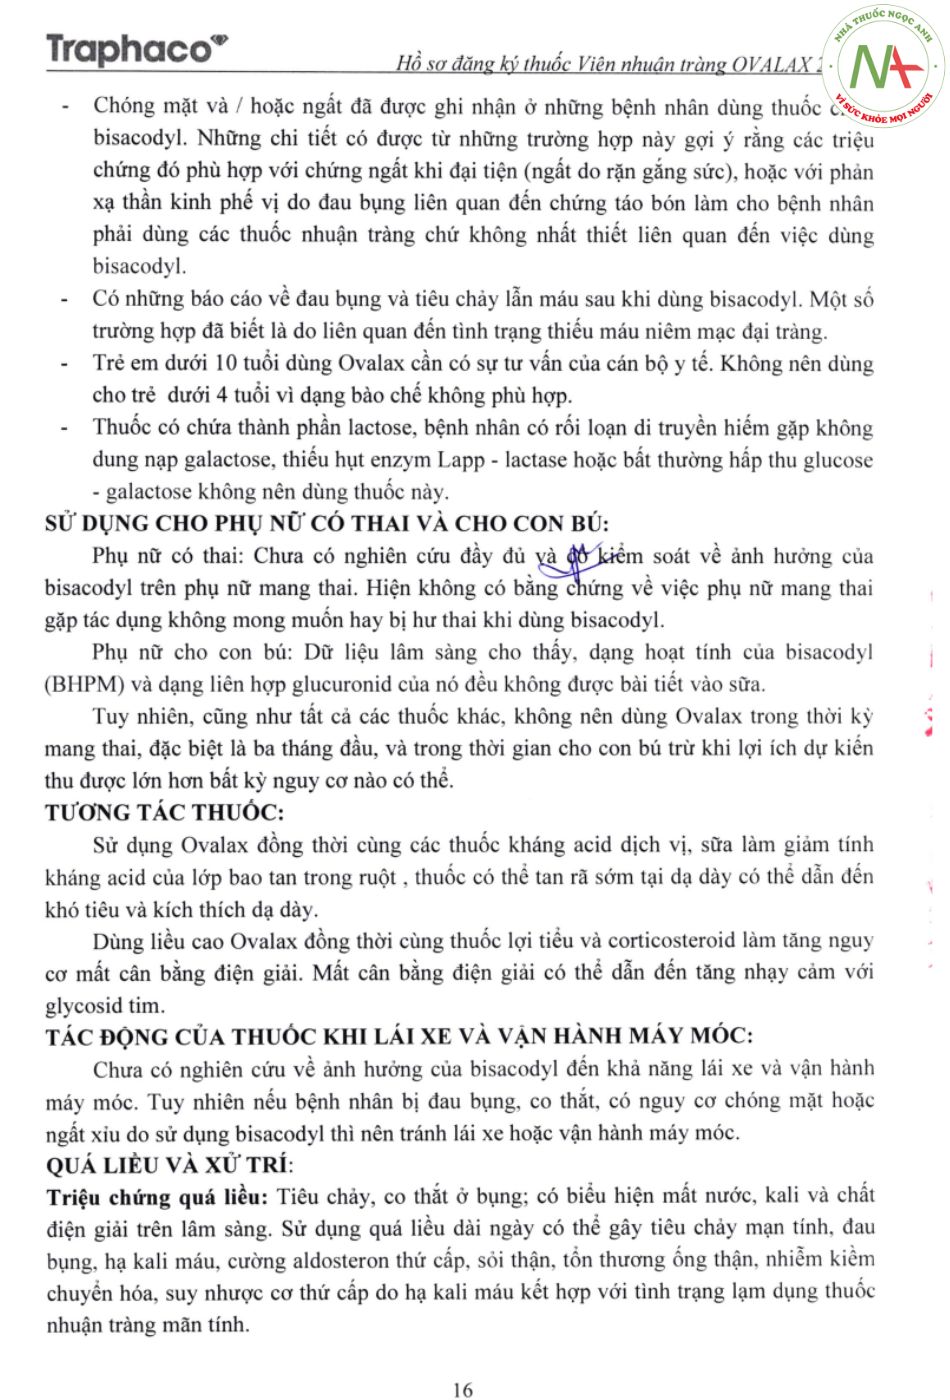 Hướng dẫn sử dụng thuốc Ovalax trang 3